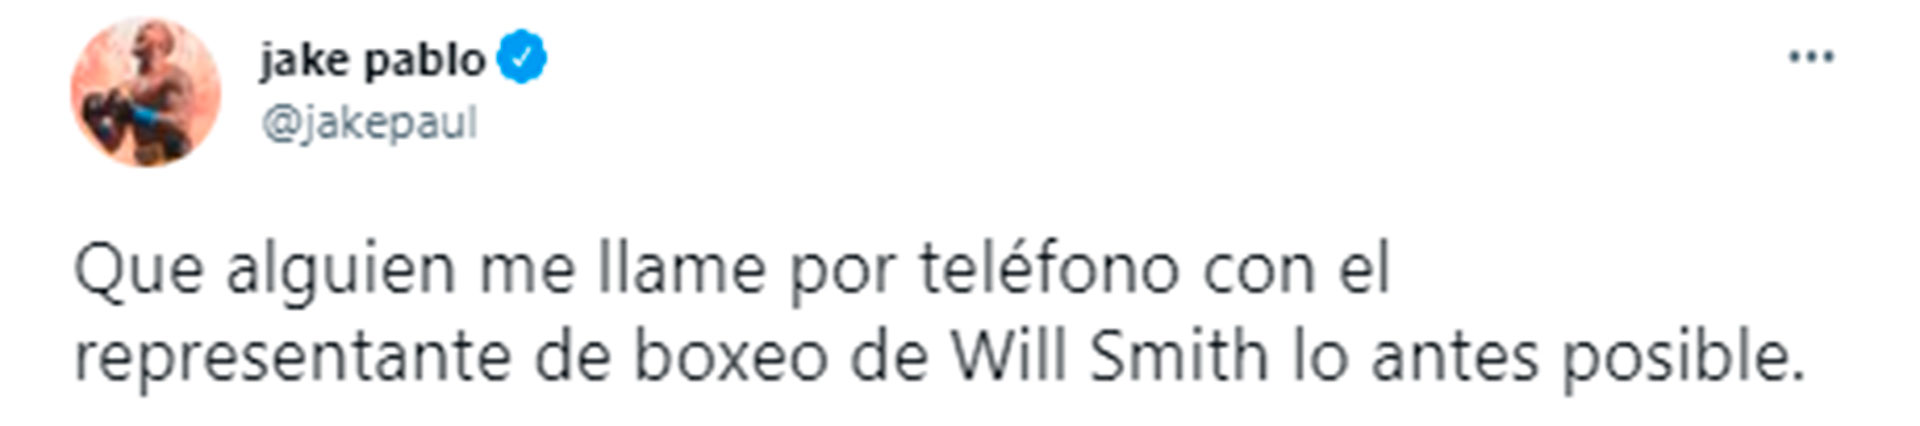 La insistencia de Jake Paul para conseguir un número de contacto de Will Smith